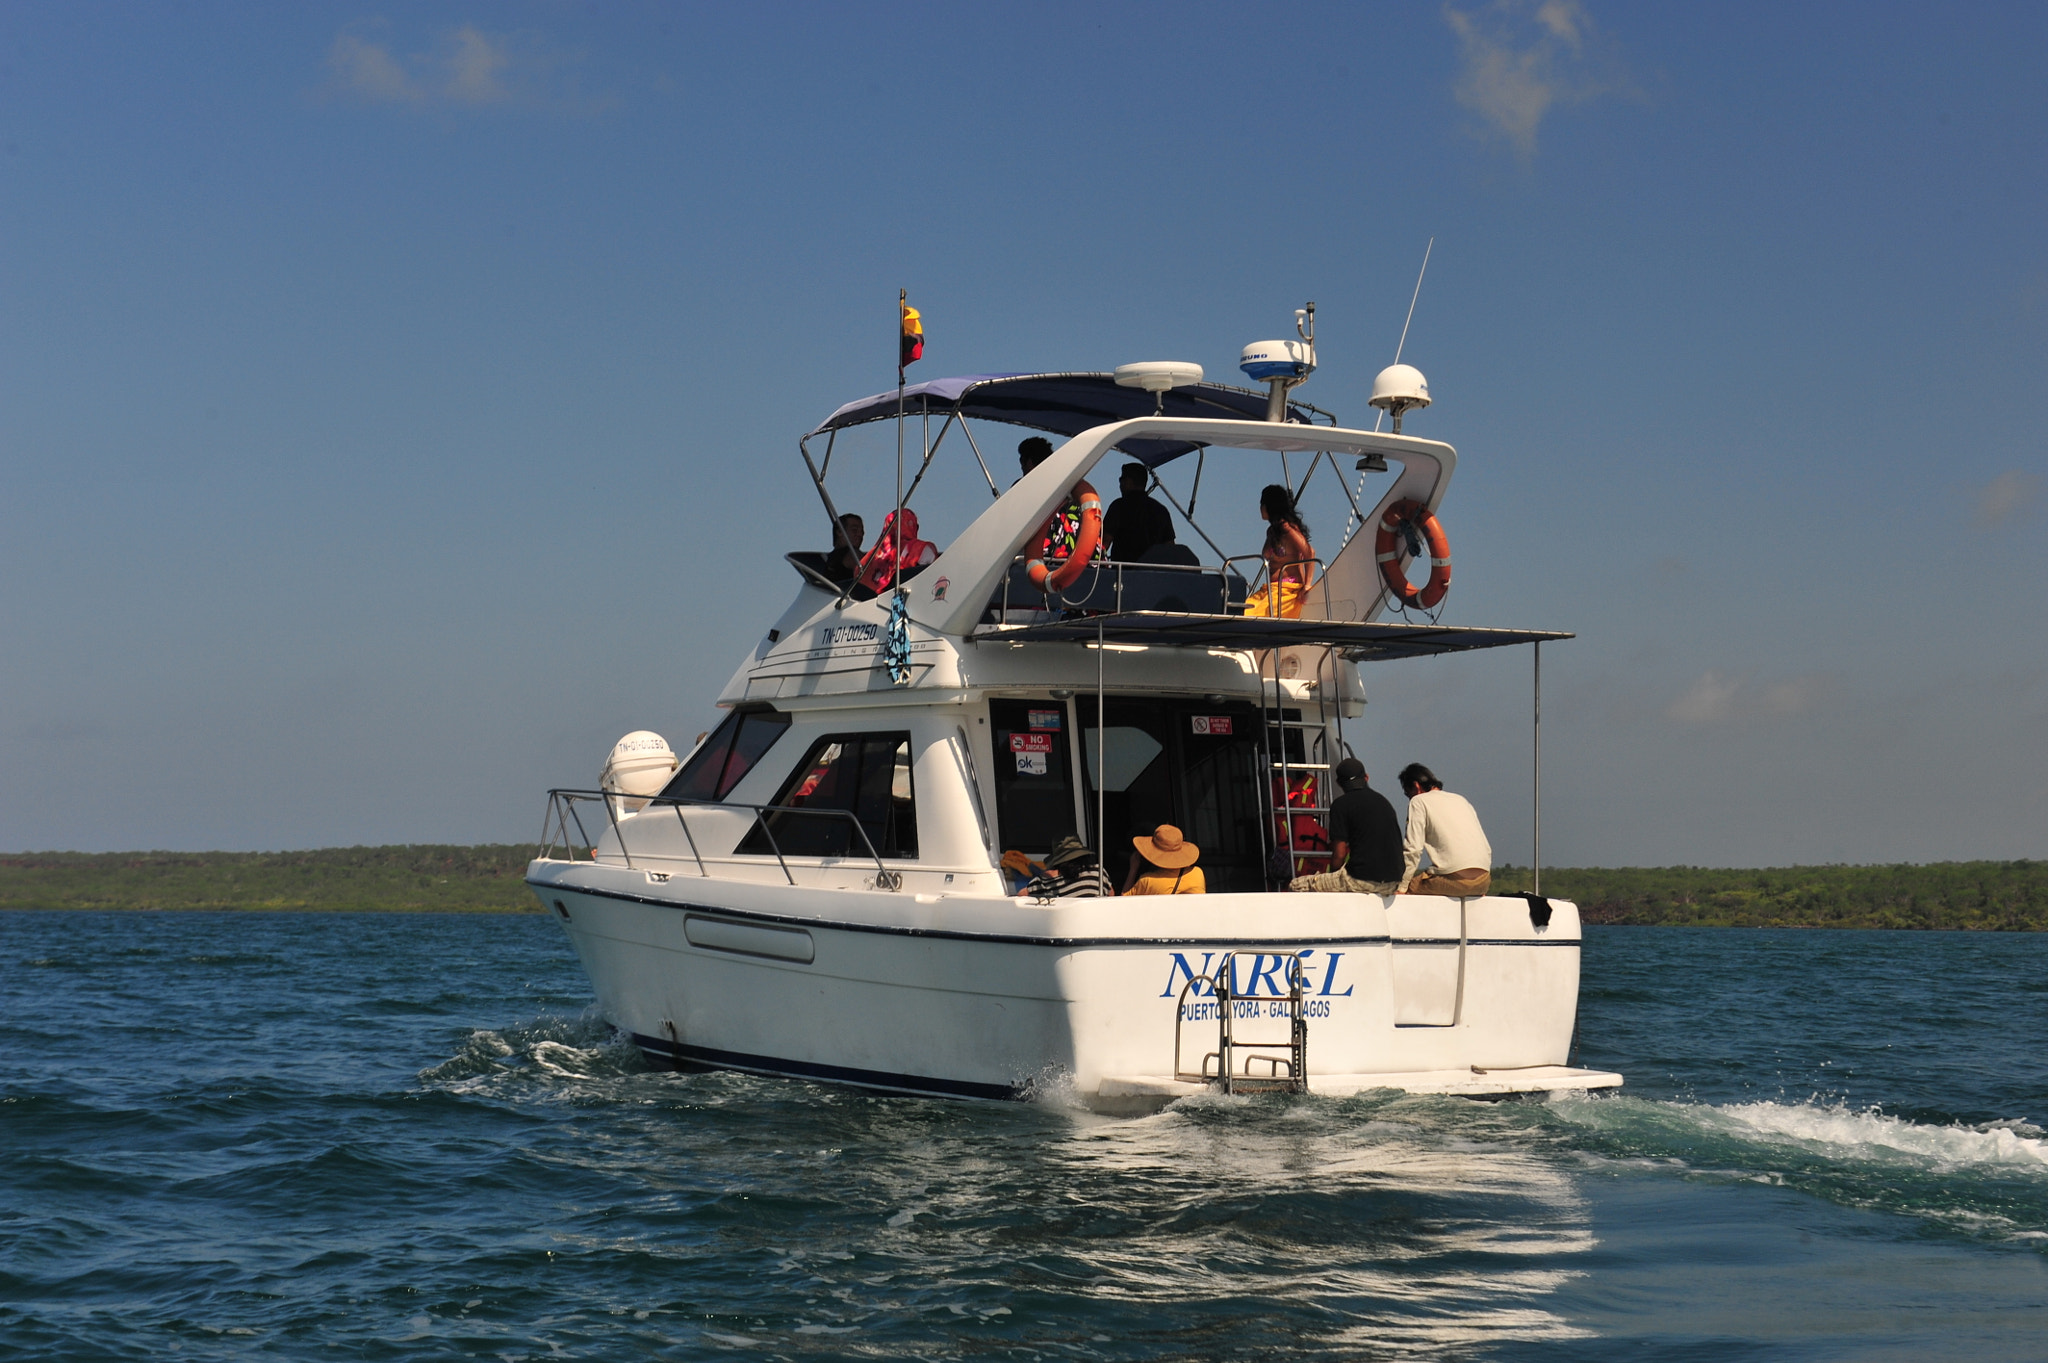 Nikon D700 sample photo. Galapagos island boat travel photography